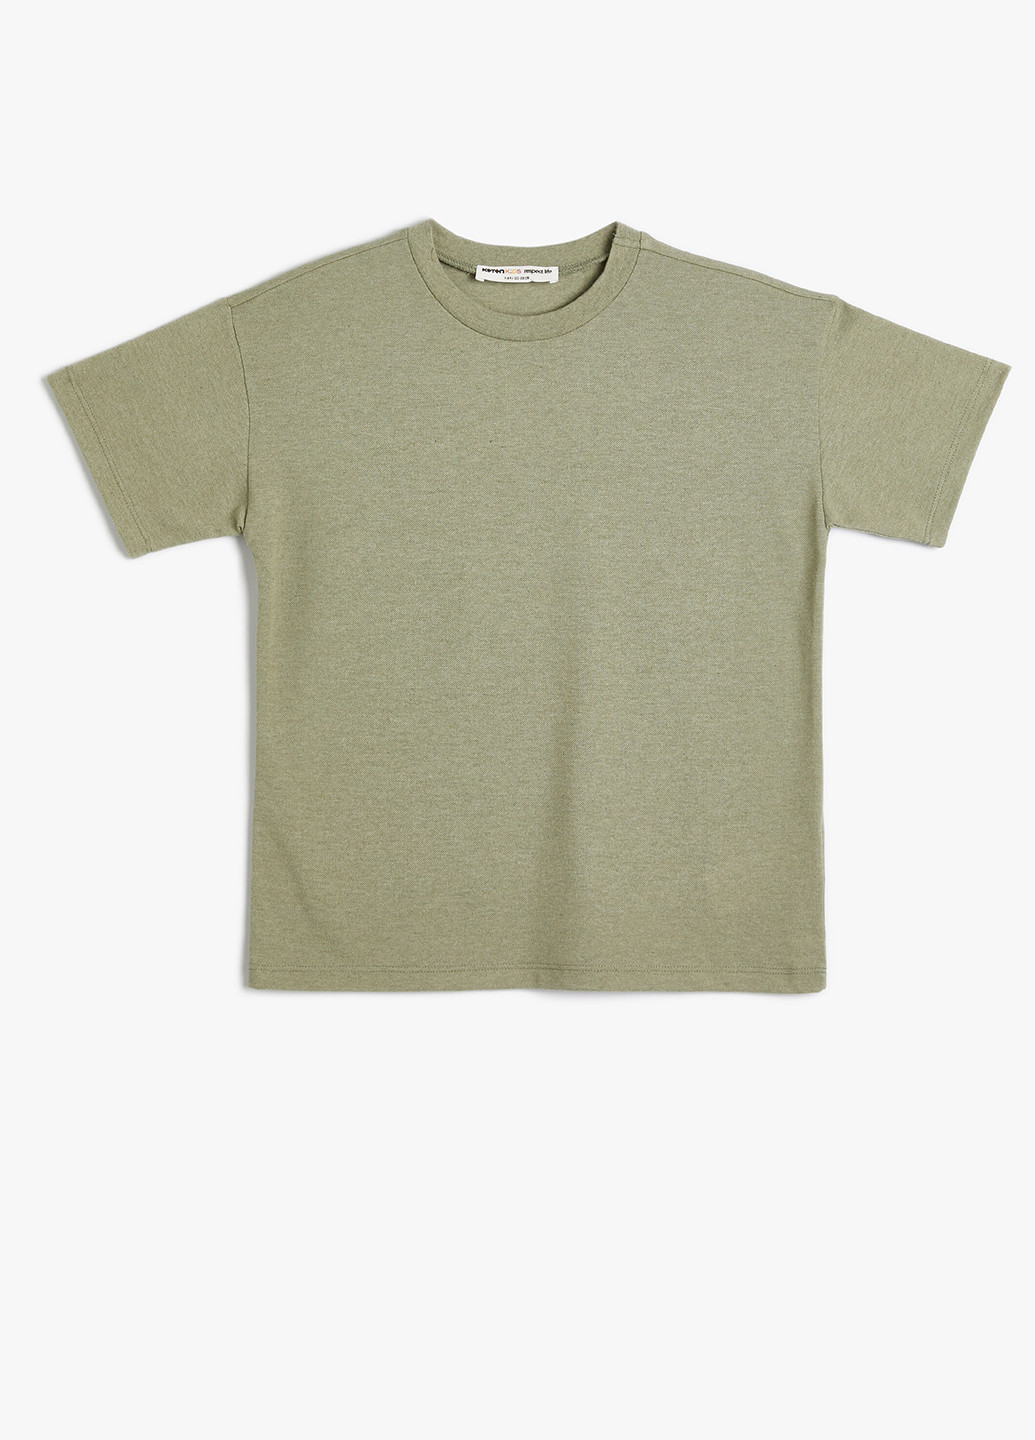 Оливковая летняя футболка KOTON